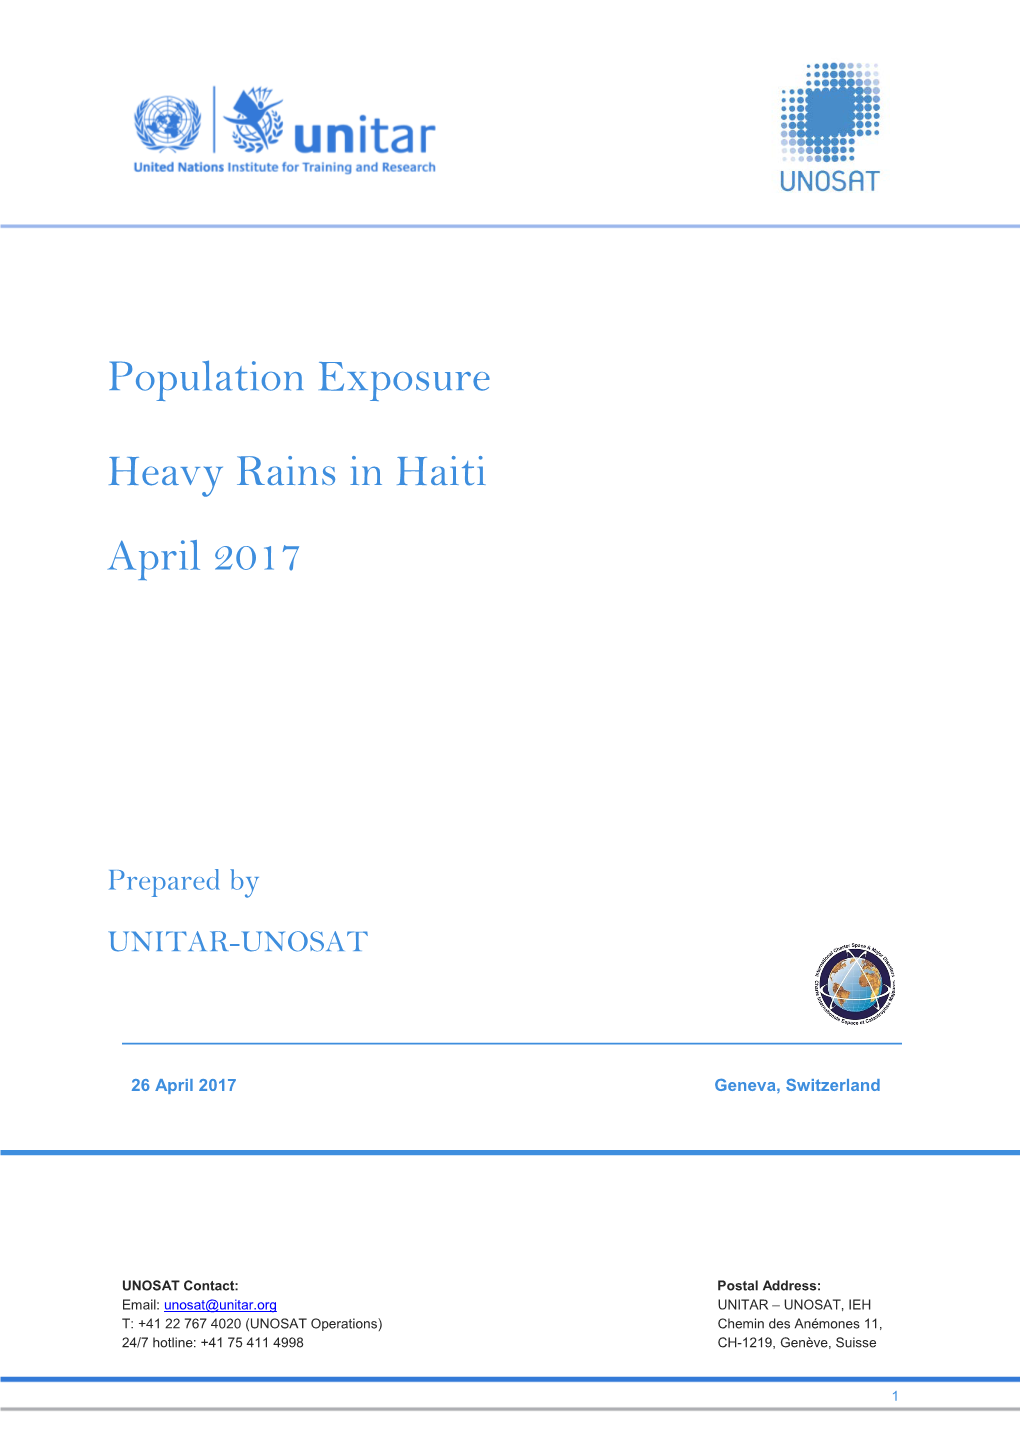 Population Exposure Heavy Rains in Haiti April 2017